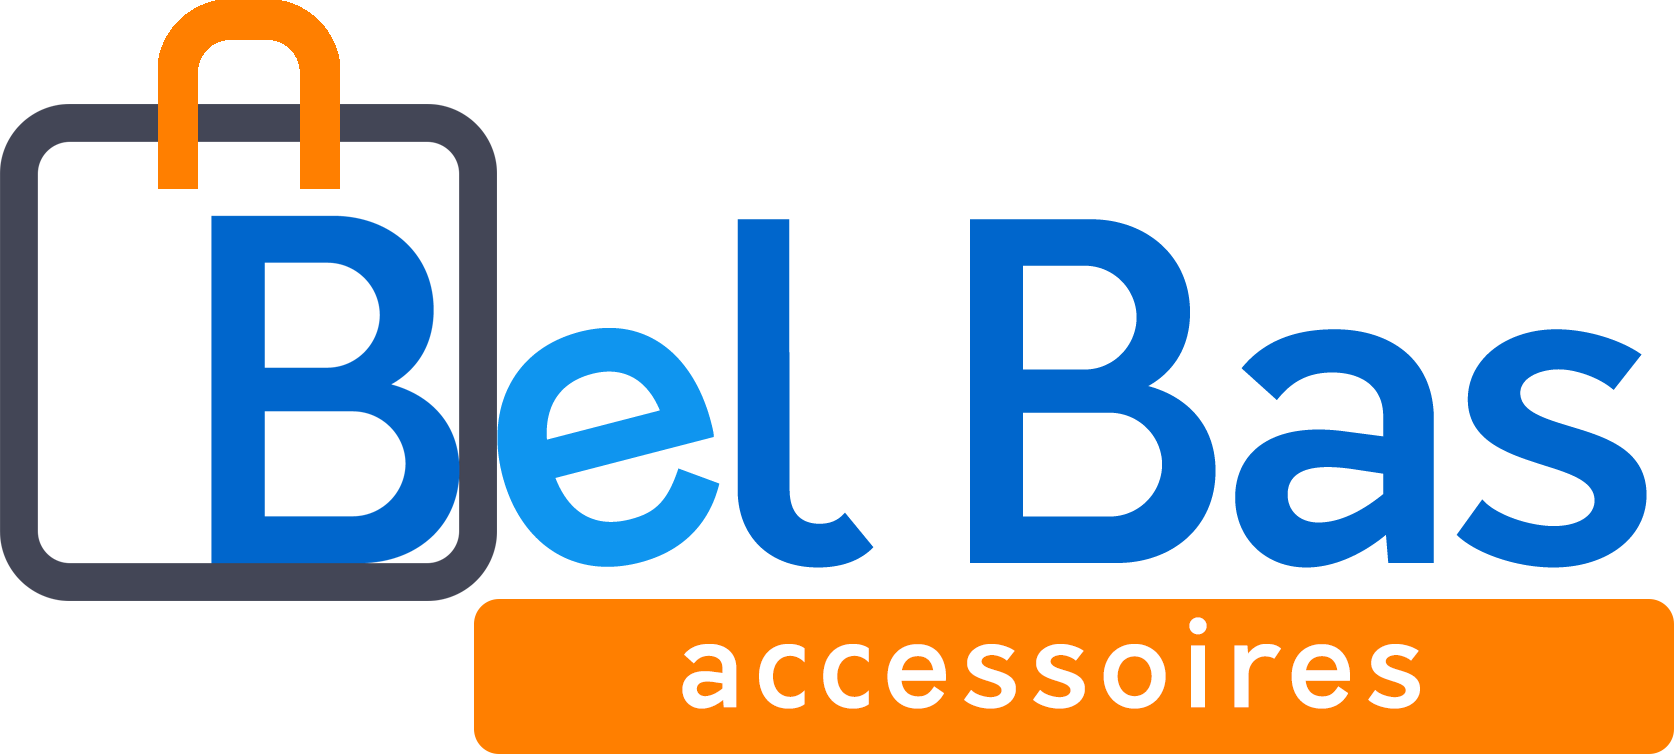 De Webshop van Bel Bas